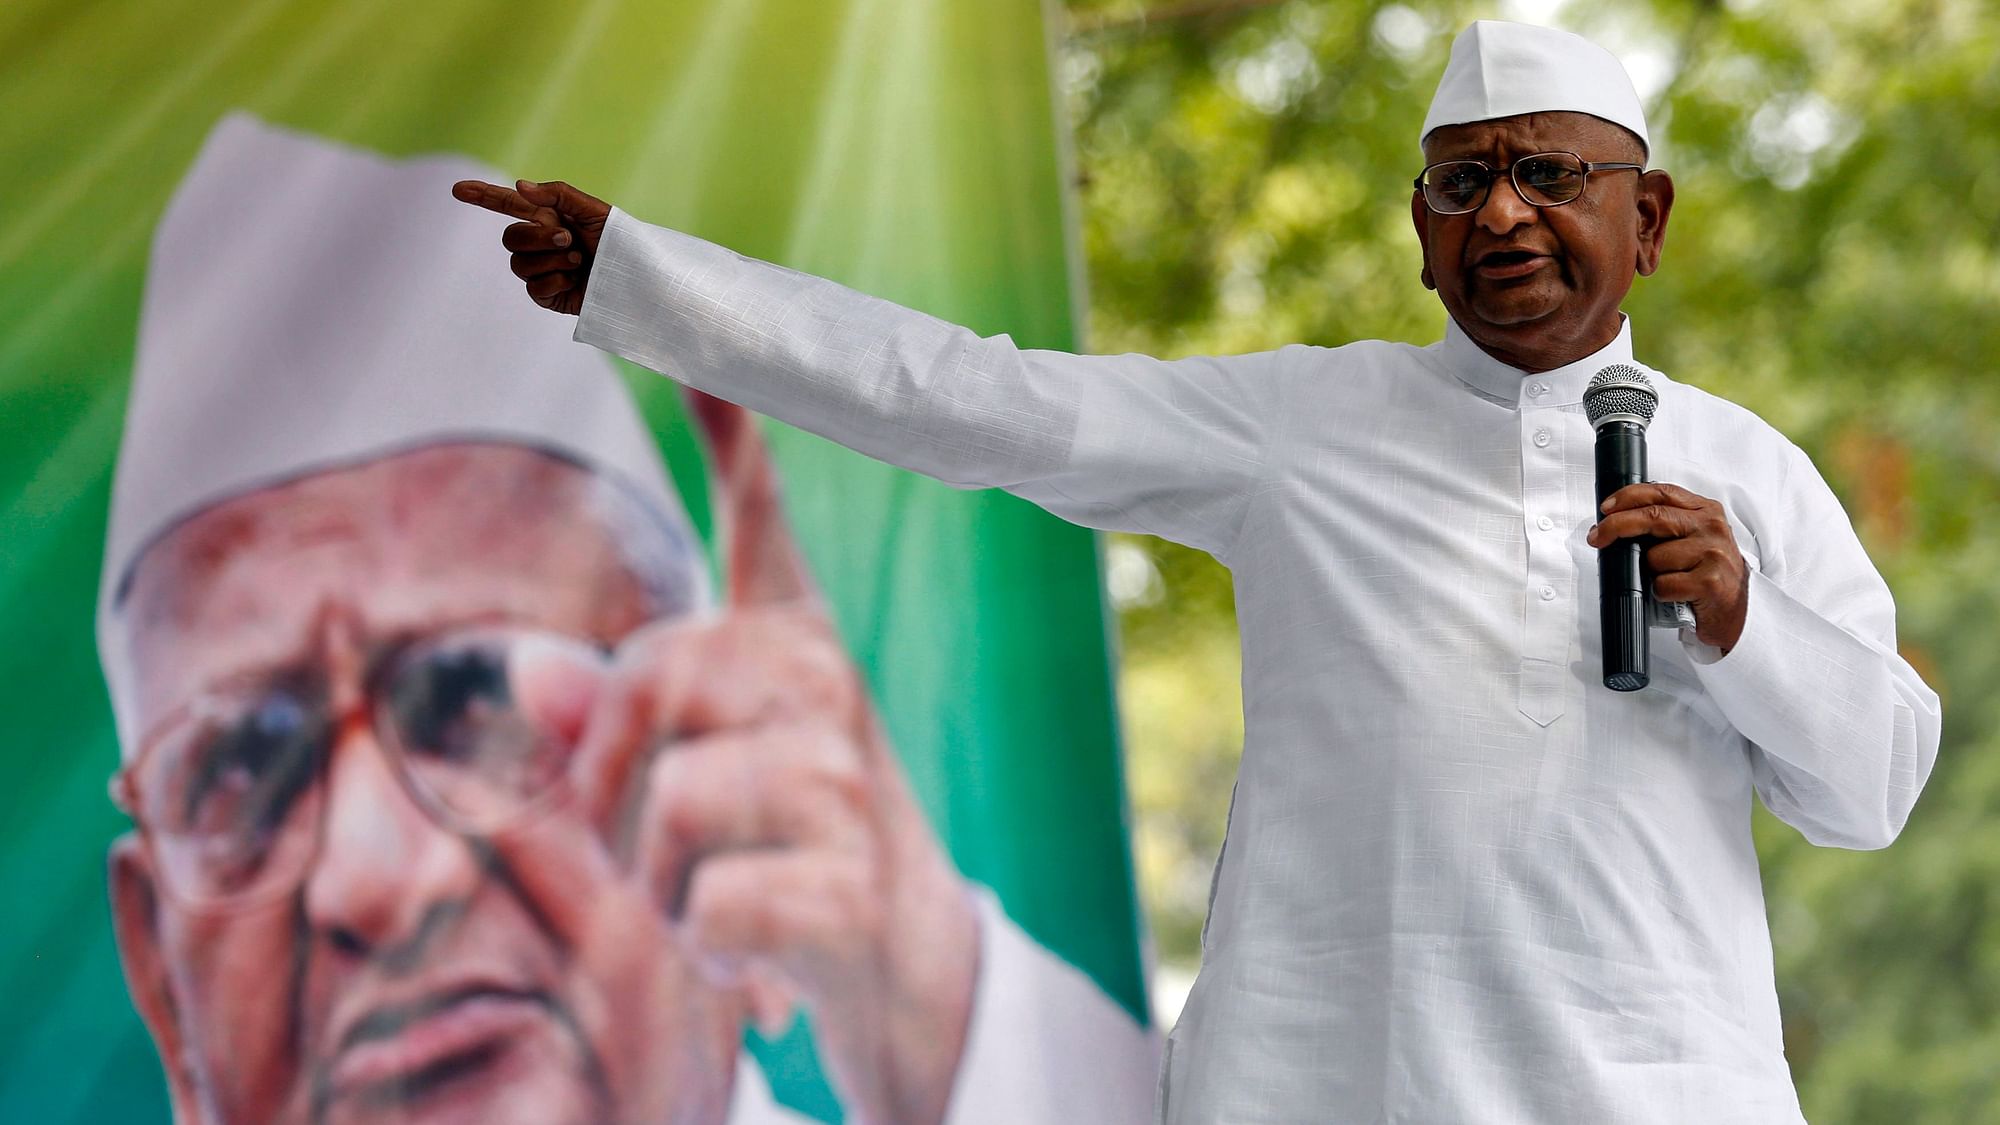 File photo of Anna Hazare.